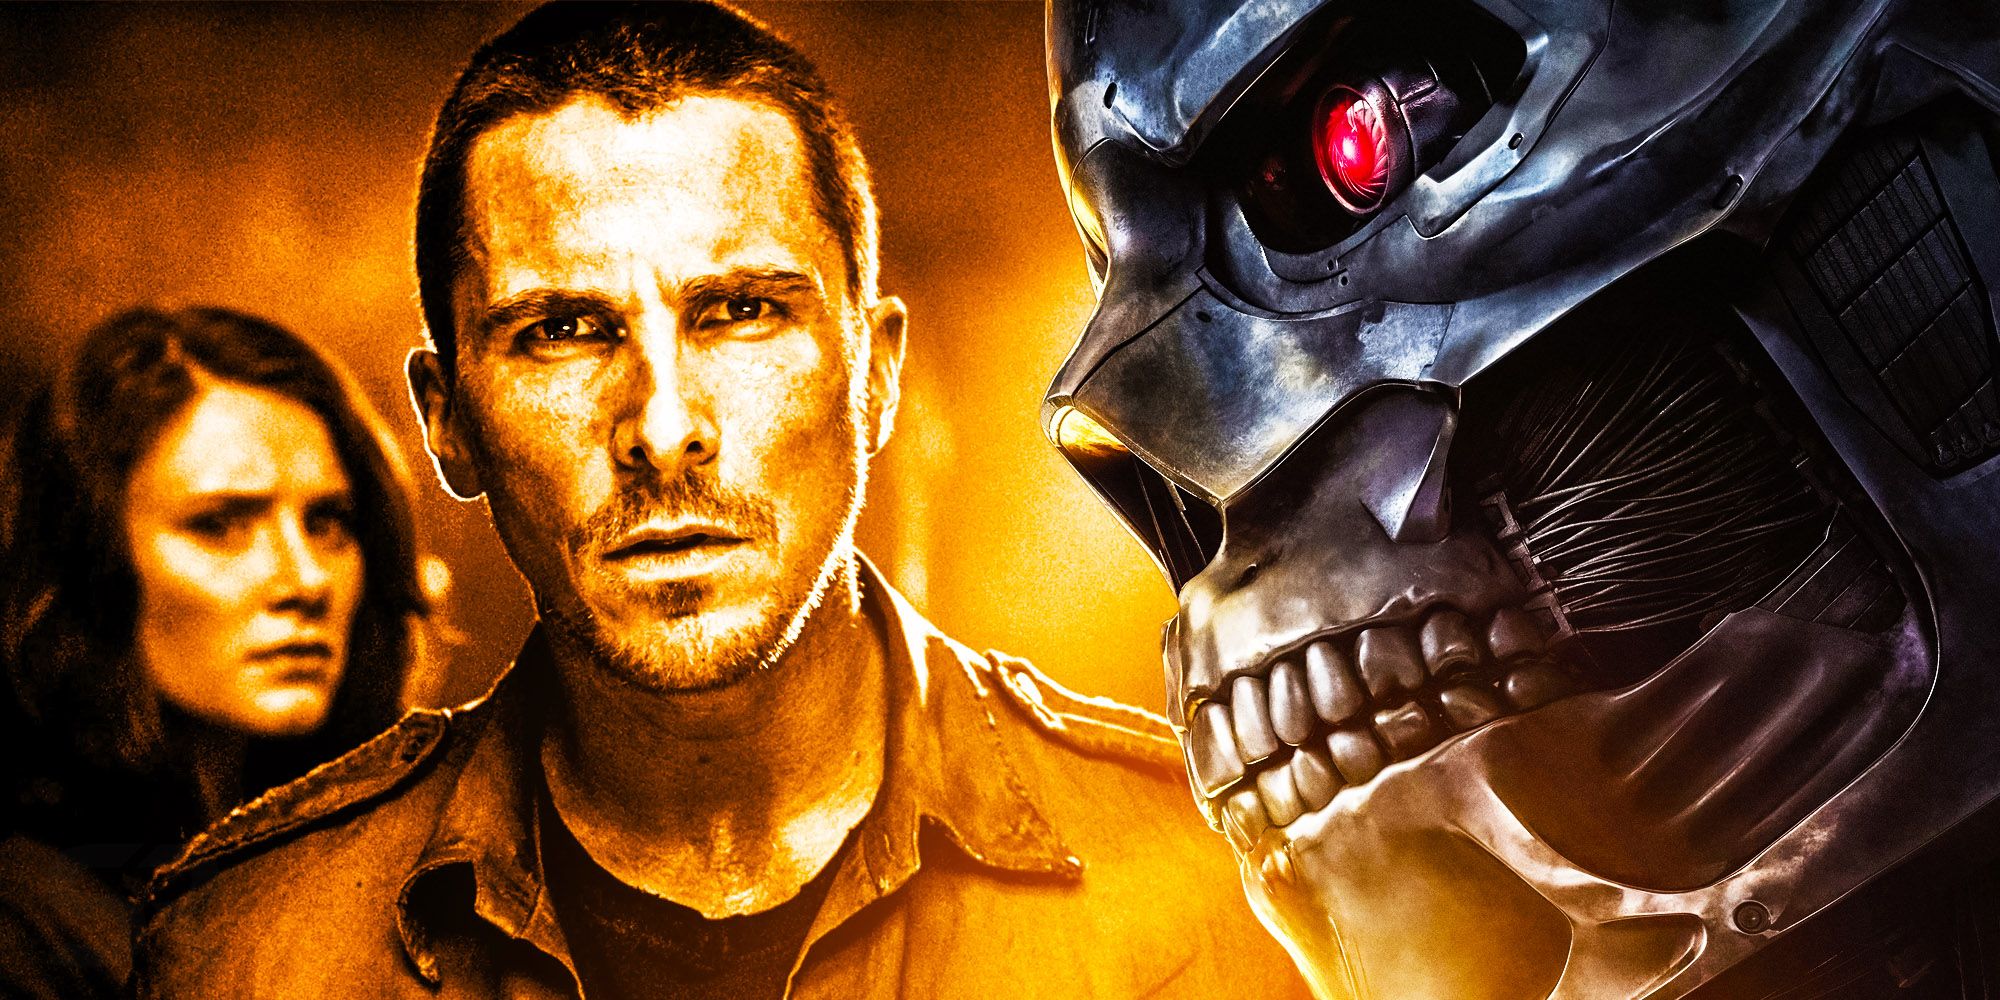 Terminator tiene 3 planes de trilogía diferentes cancelados (por qué todos fallaron)